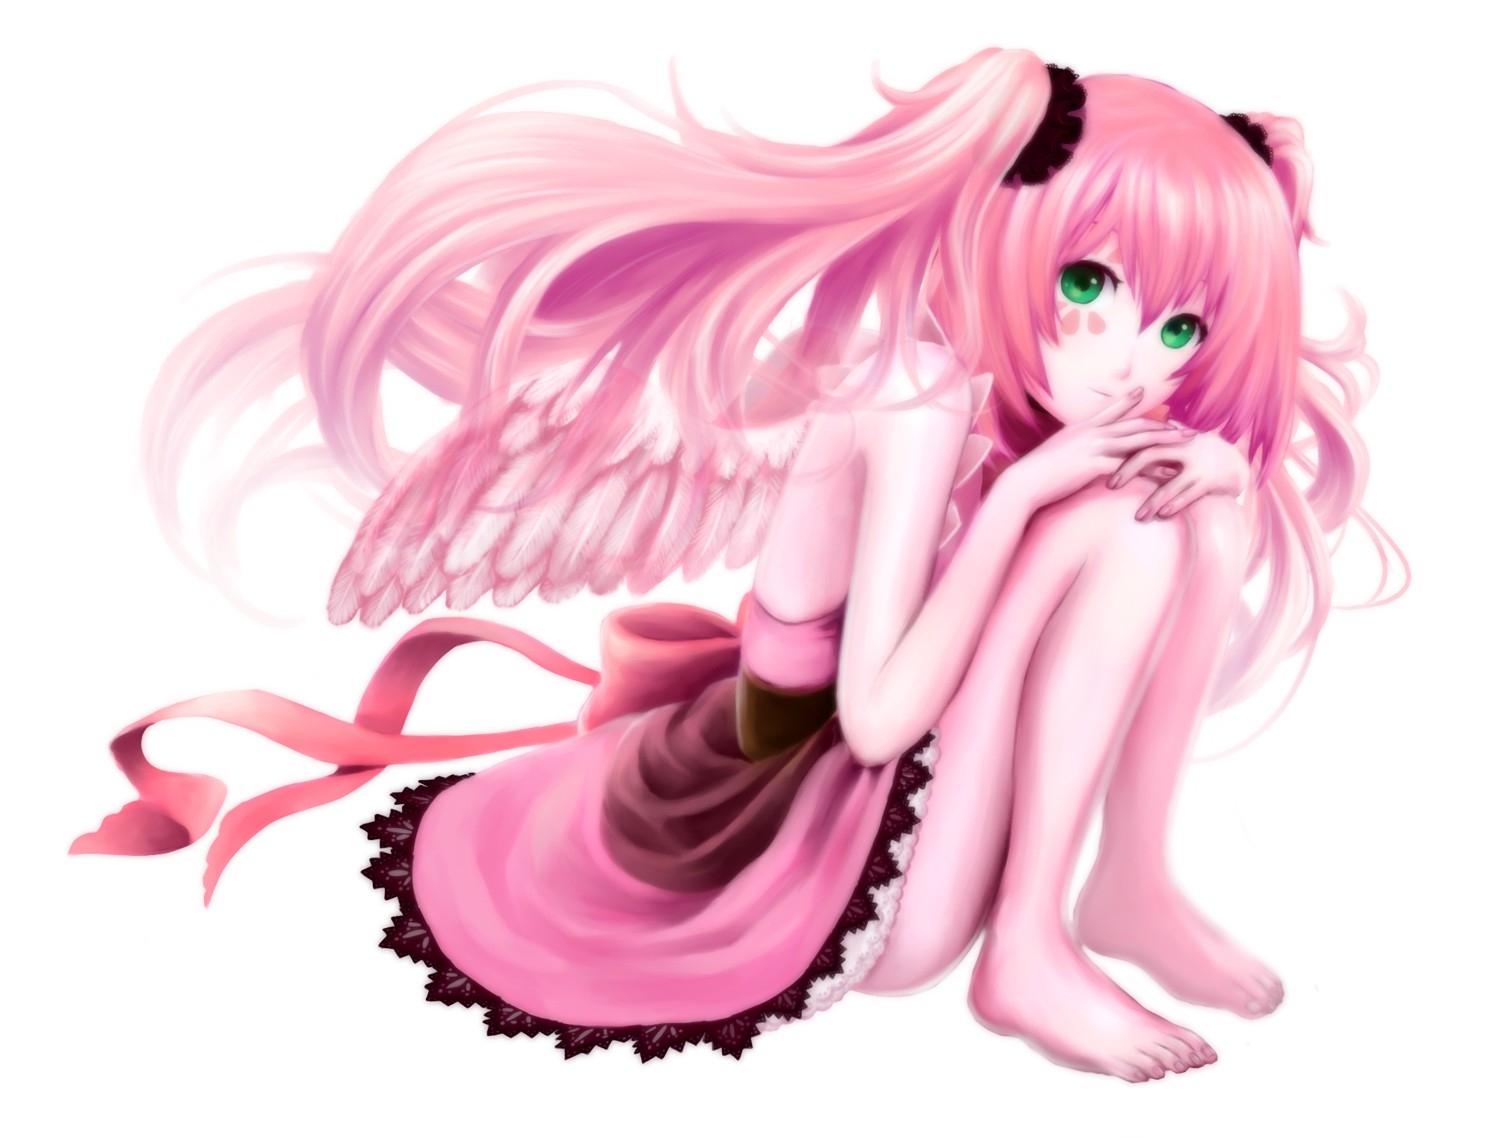 wings ribbons green eyes pink hair pink dress anime girls